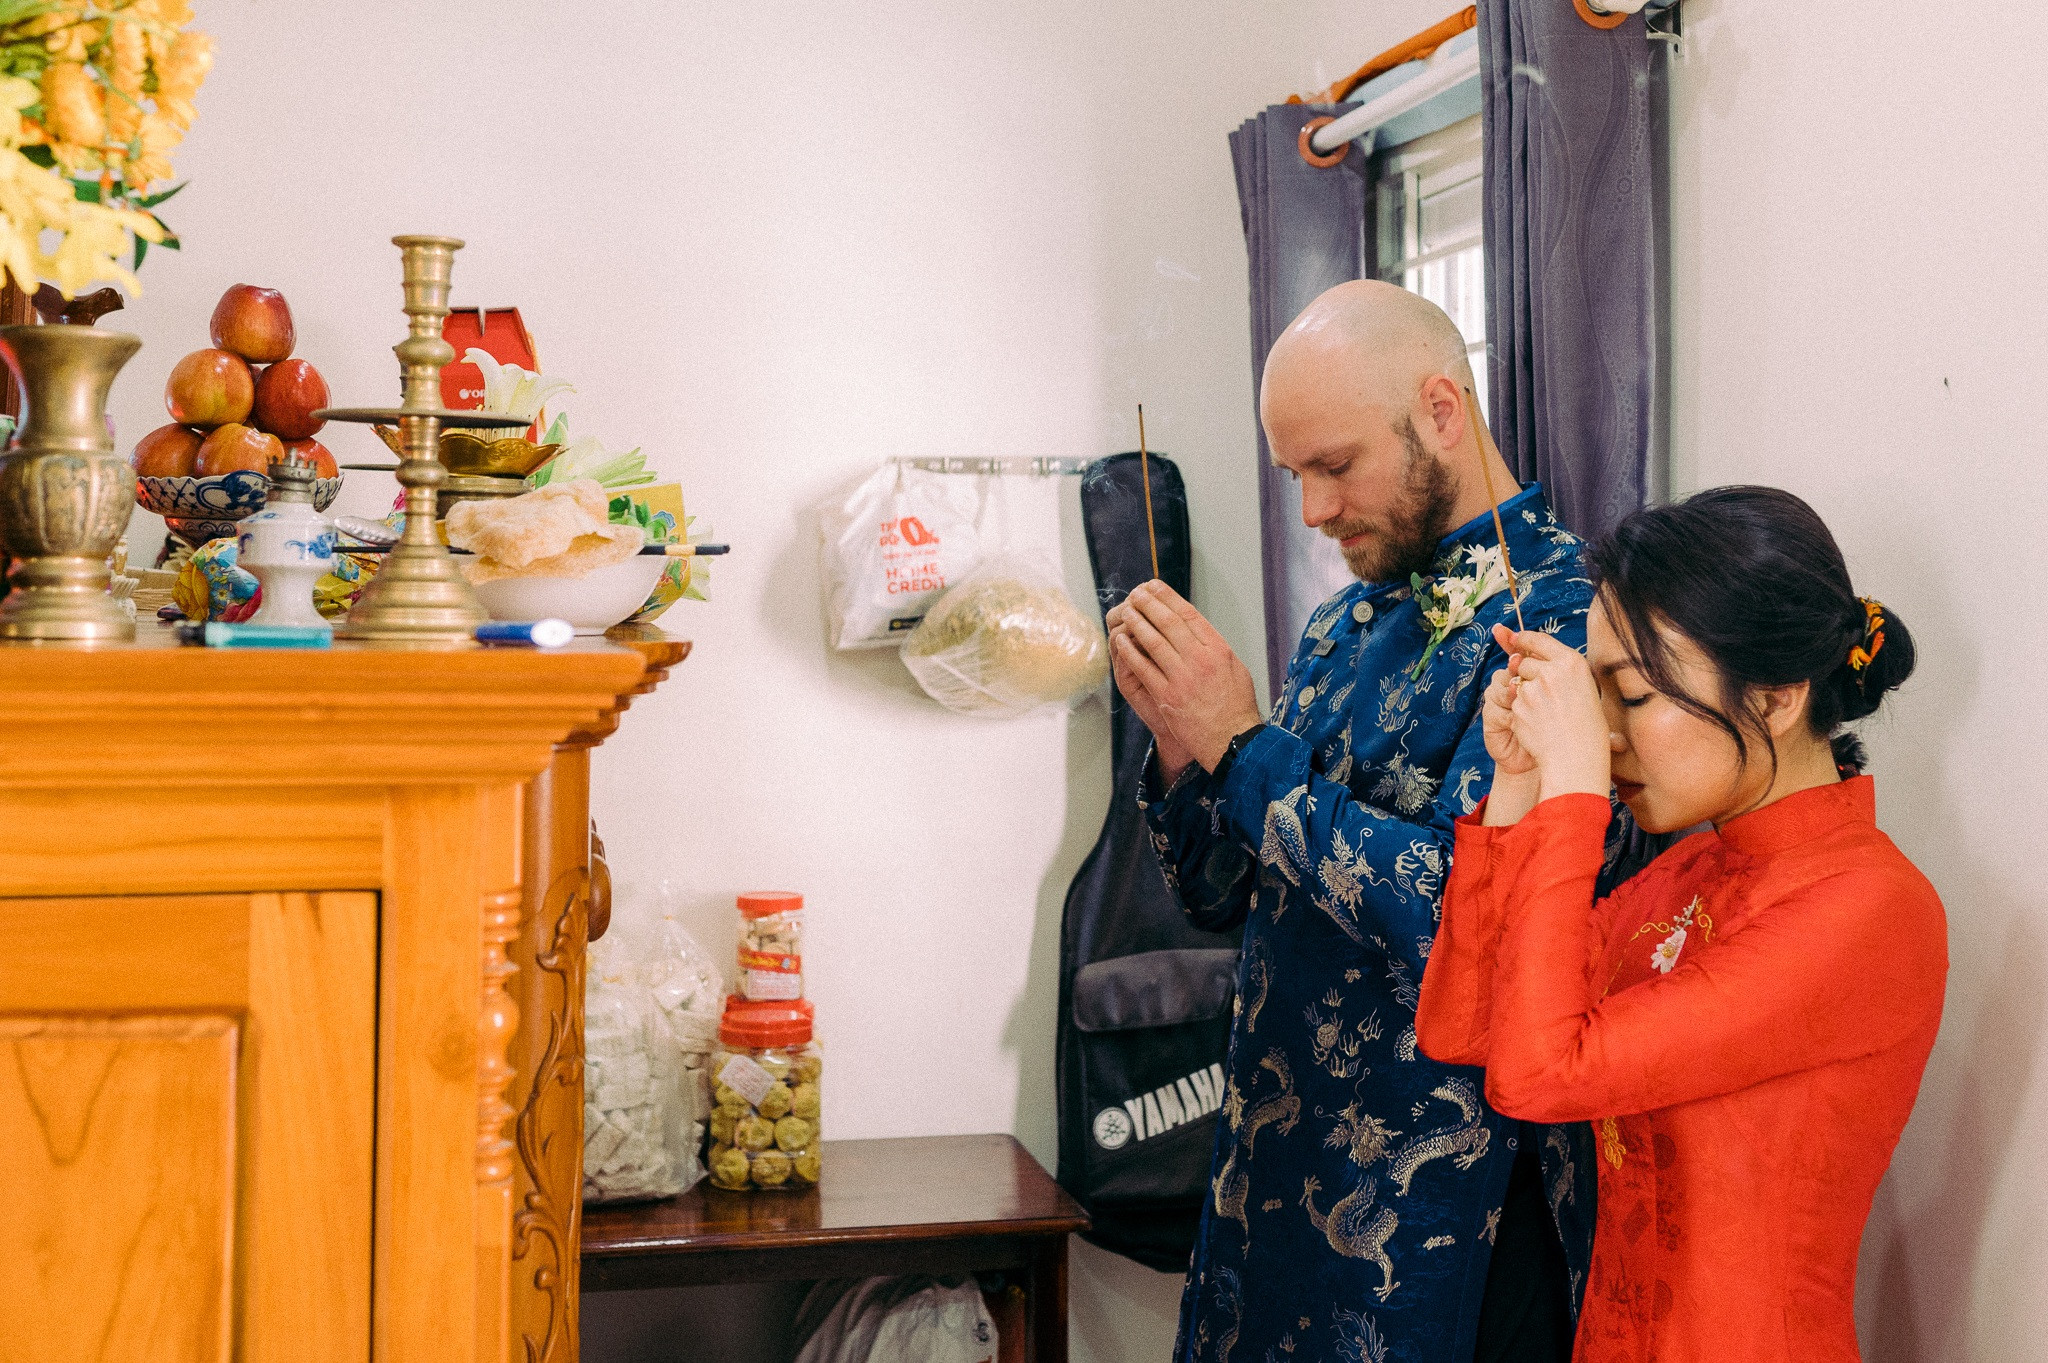 Đám cưới cây nhà lá vườn của vợ Việt, chồng Tây gây 'sốt' mạng xã hội